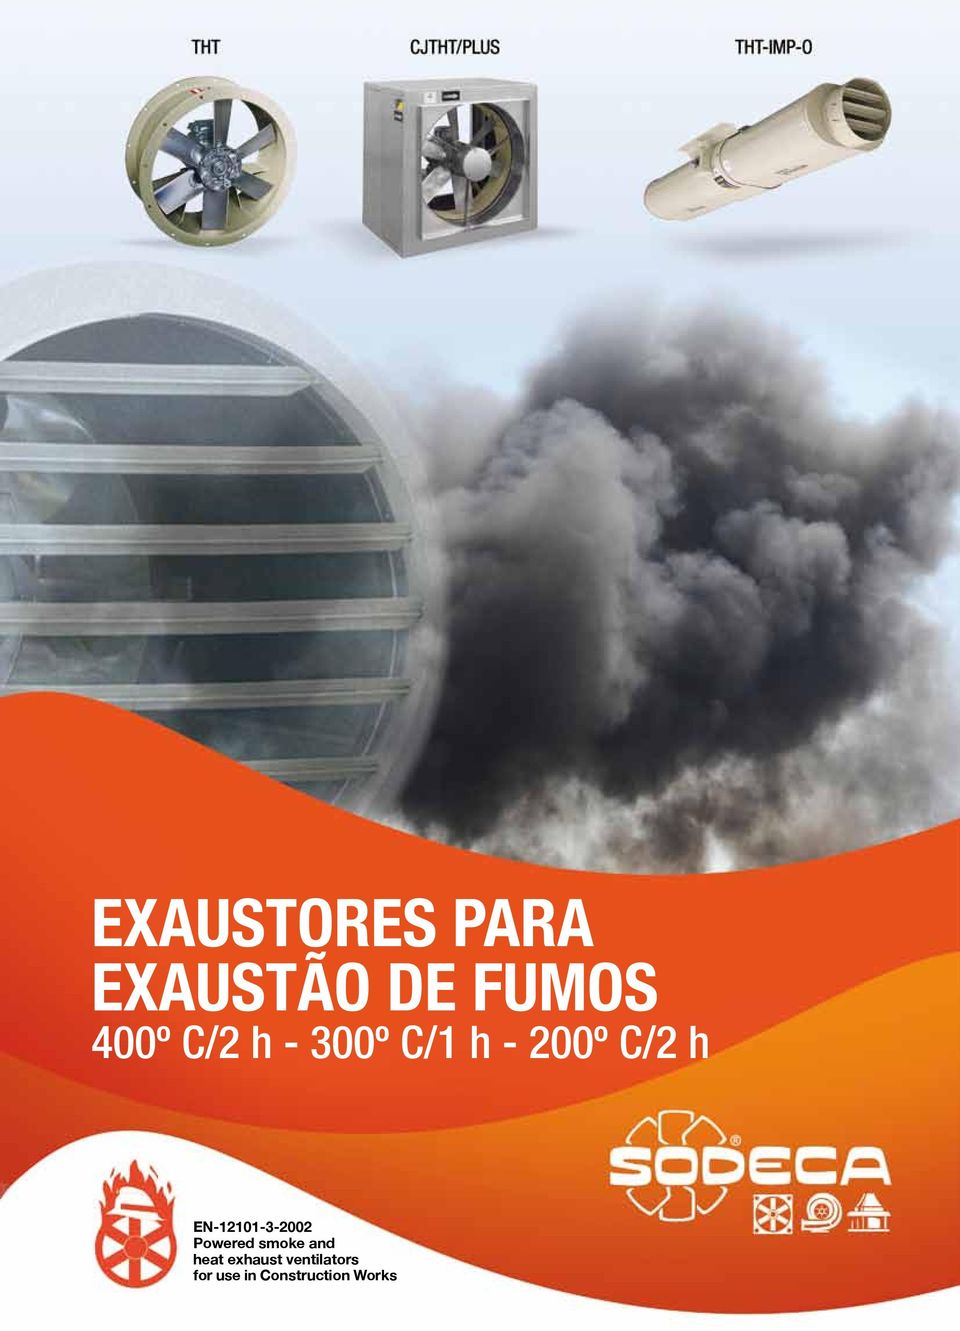 EN-12101-3-2002 Powered smoke and heat